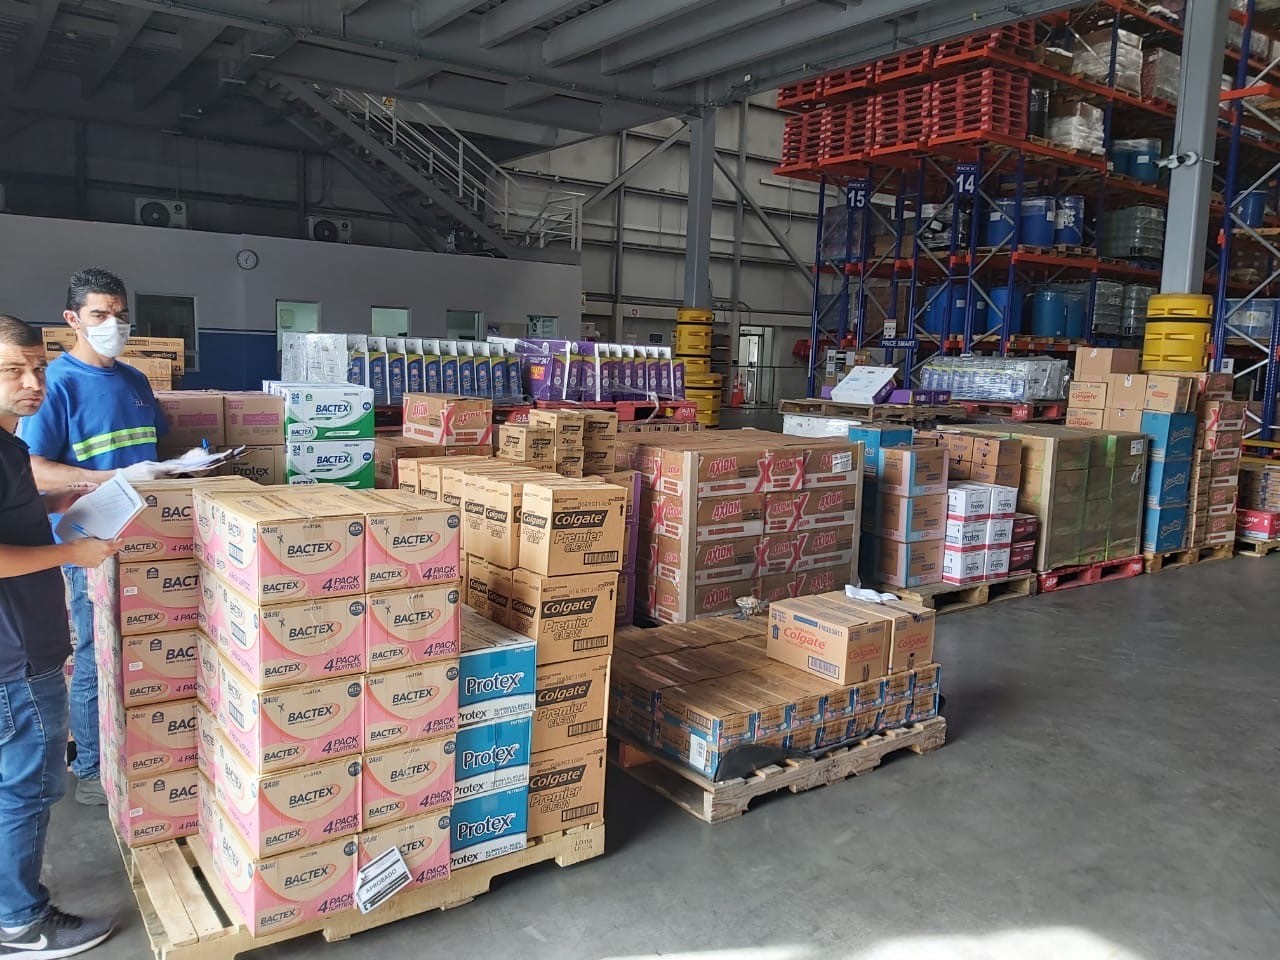 Colgate Palmolive dona 15 toneladas de producto a la CCSS, beneficiando a familias de los cantones de Puntarenas y zona sur